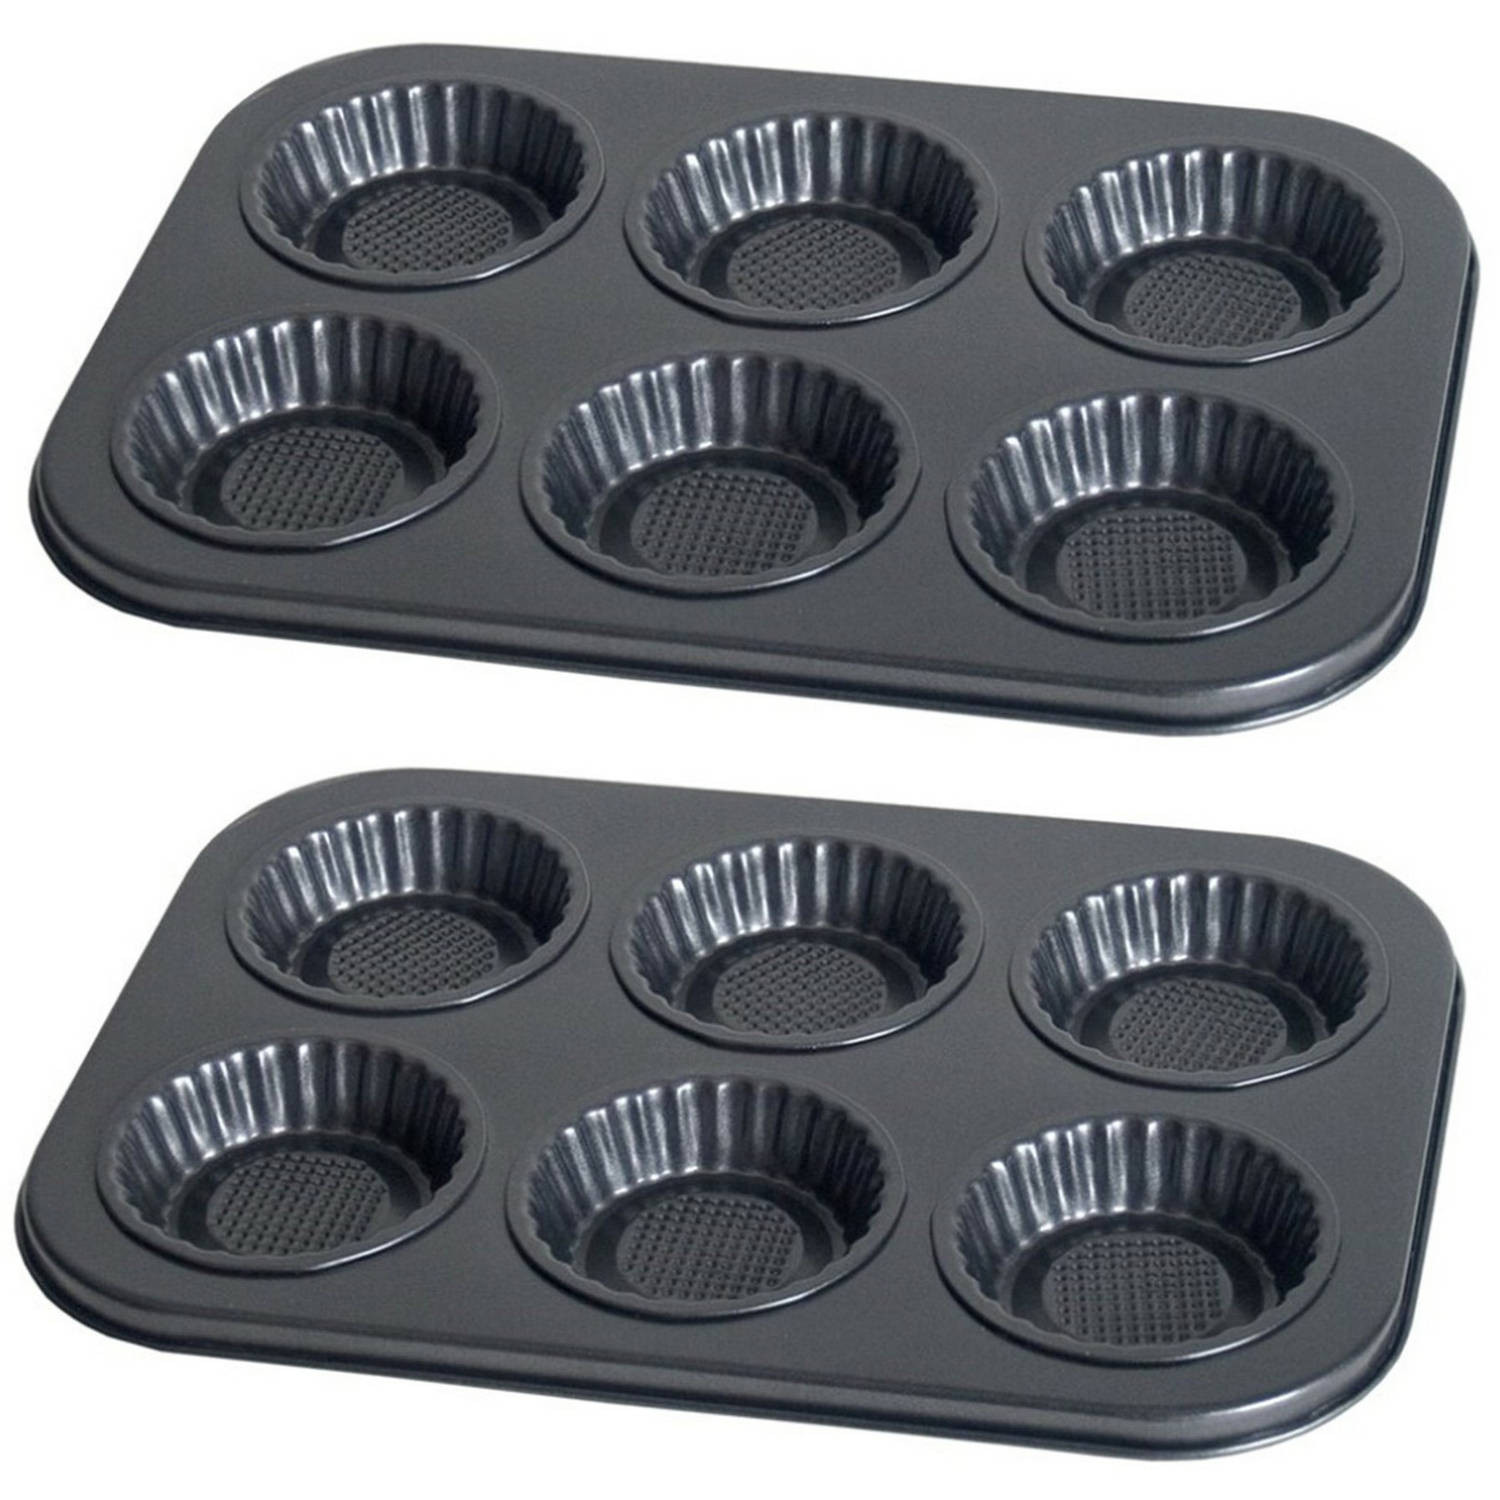 2x stuks muffins en cupcakes bakken bakvorm/bakblik 26 x 19 cm - voor 6x stuks - Muffinvormen / cupcakevormen